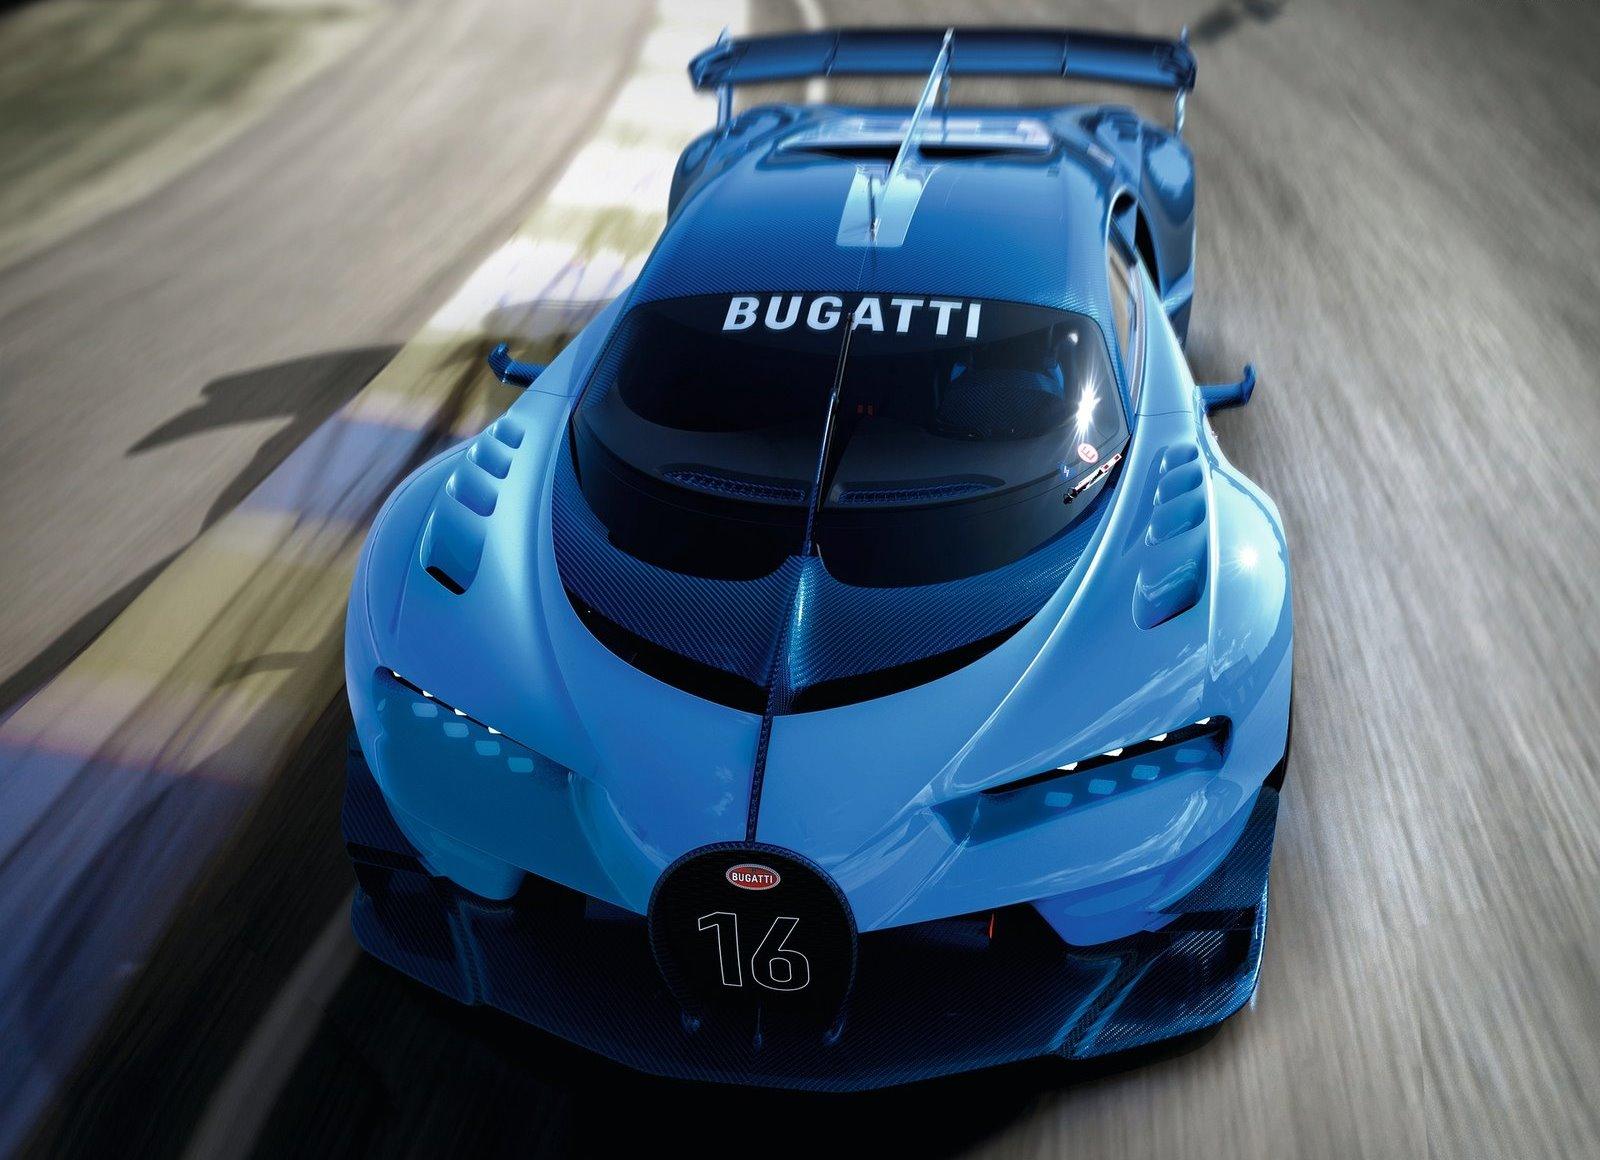 Free Download HD Wallpaper Of Bugatti Car, Bugatti Vision Gran